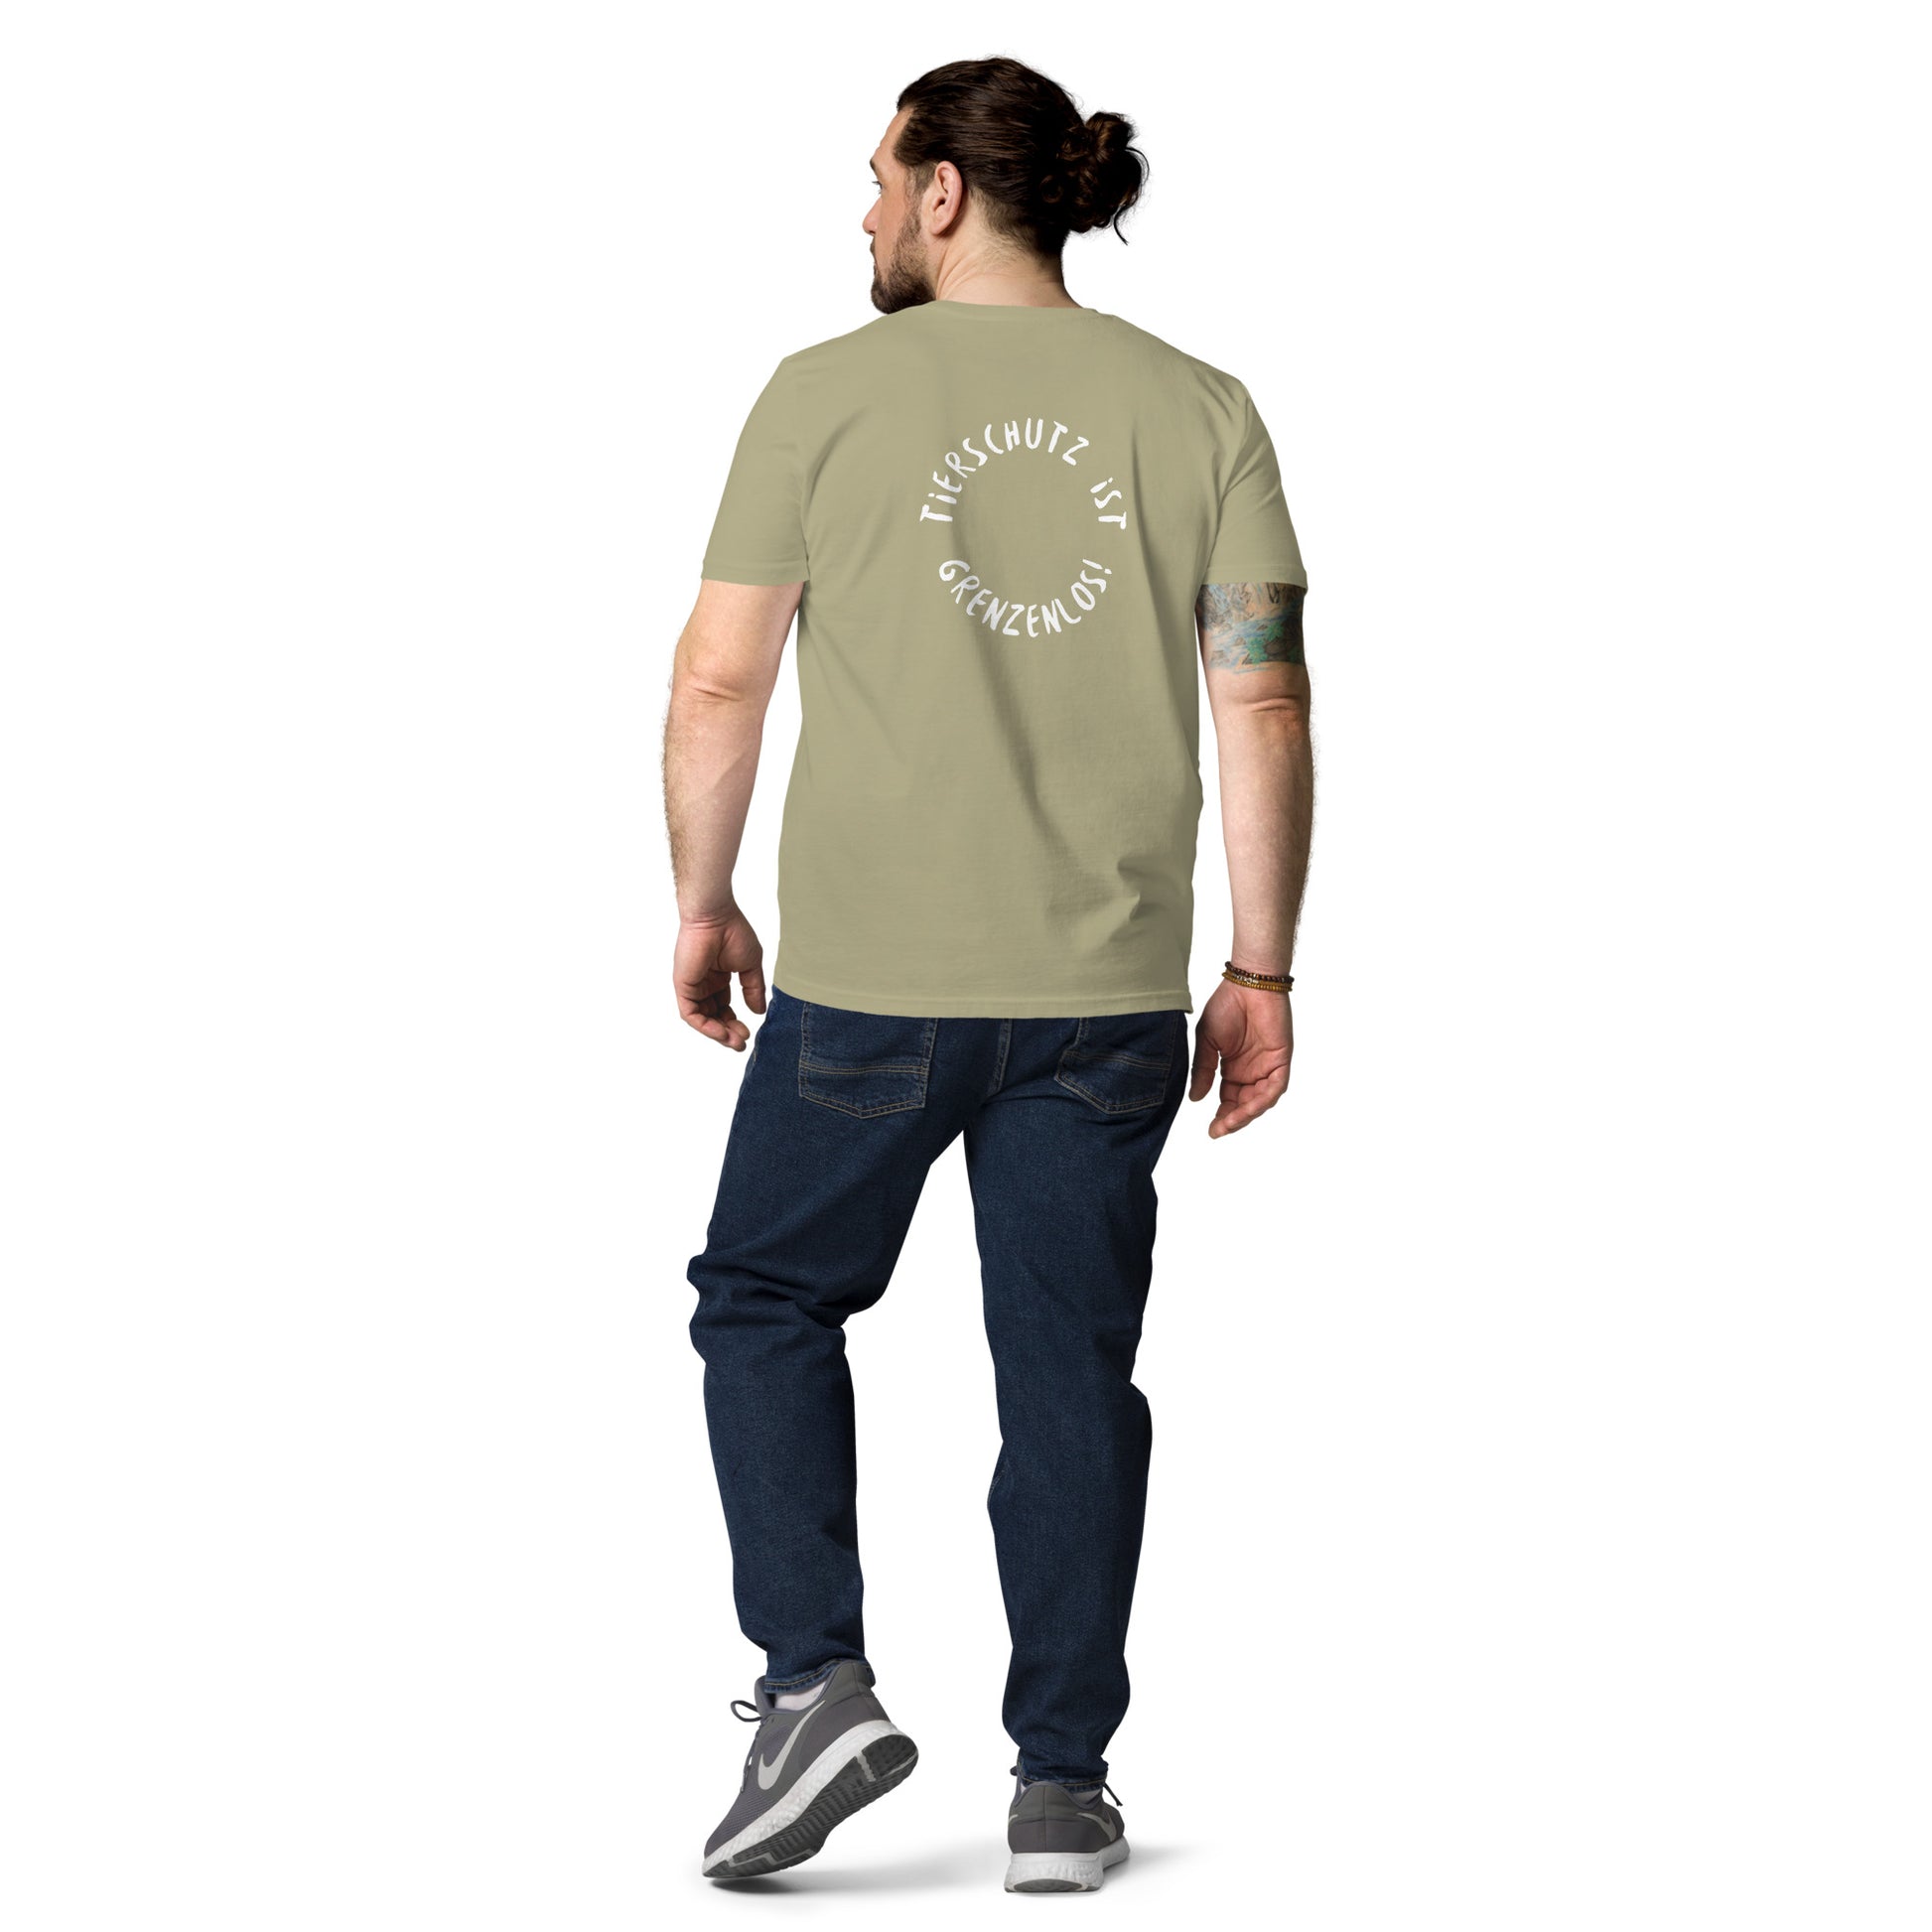 Bio-Baumwoll-T-Shirt - DoPetMe